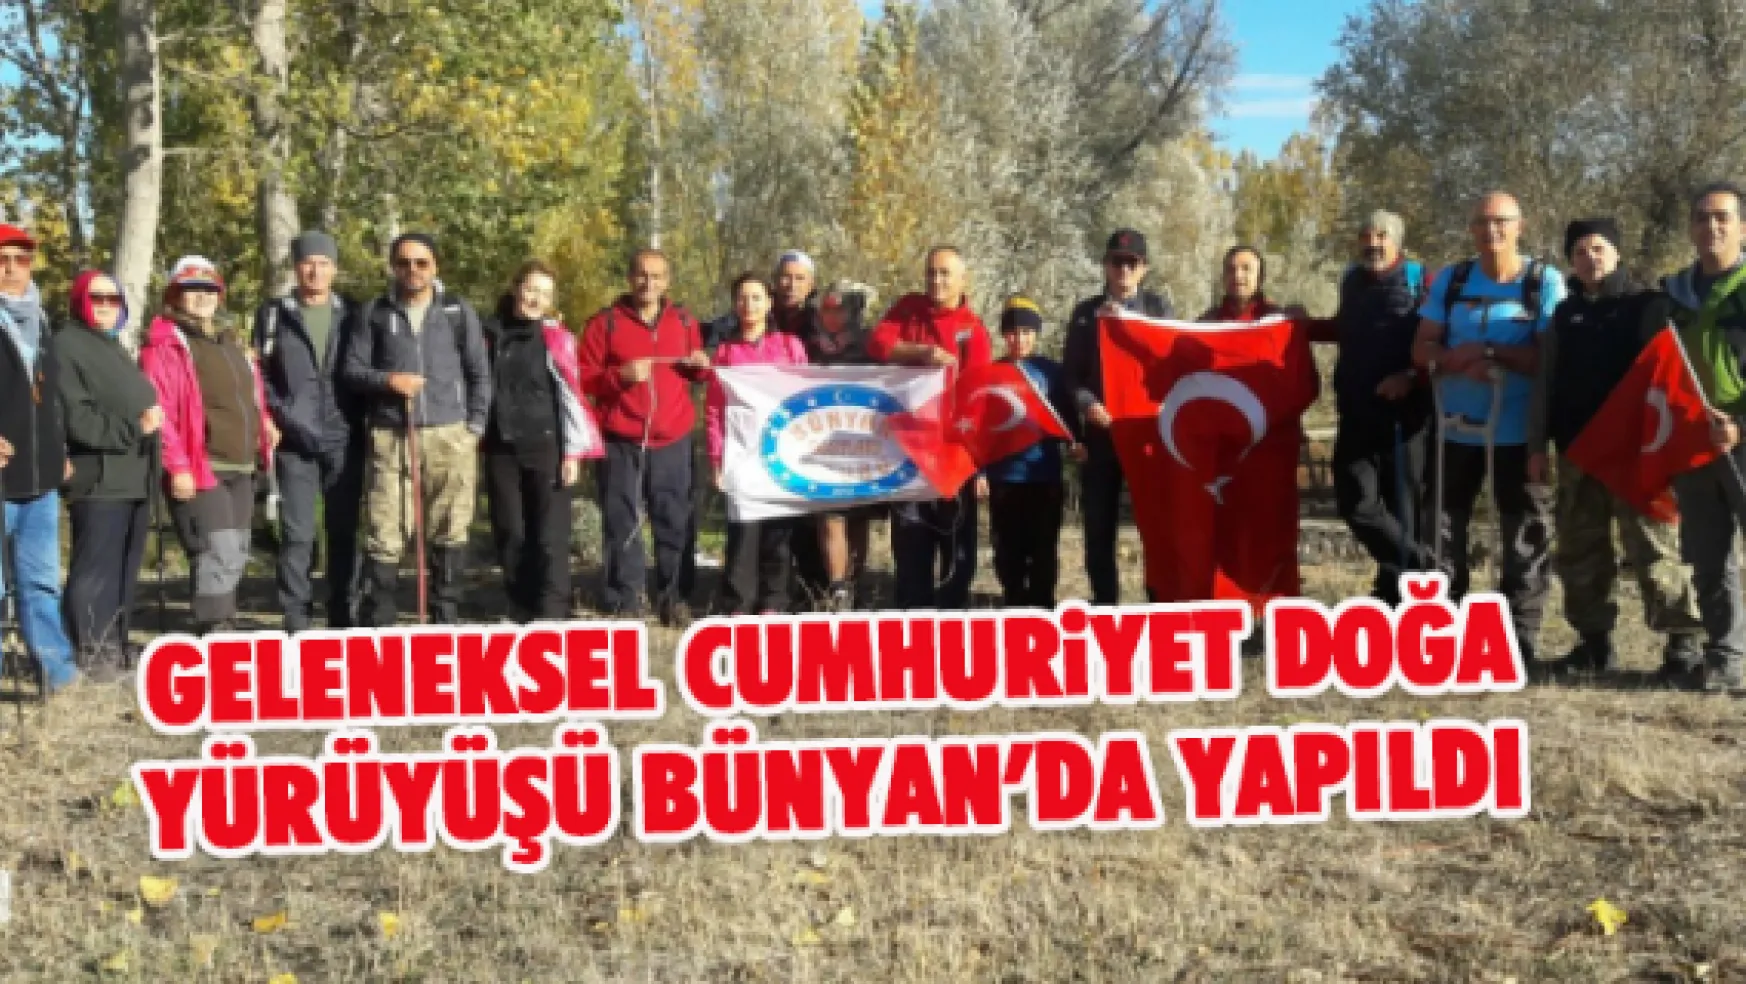 Geleneksel Cumhuriyet Doğa Yürüyüşü Bünyan'da yapıldı